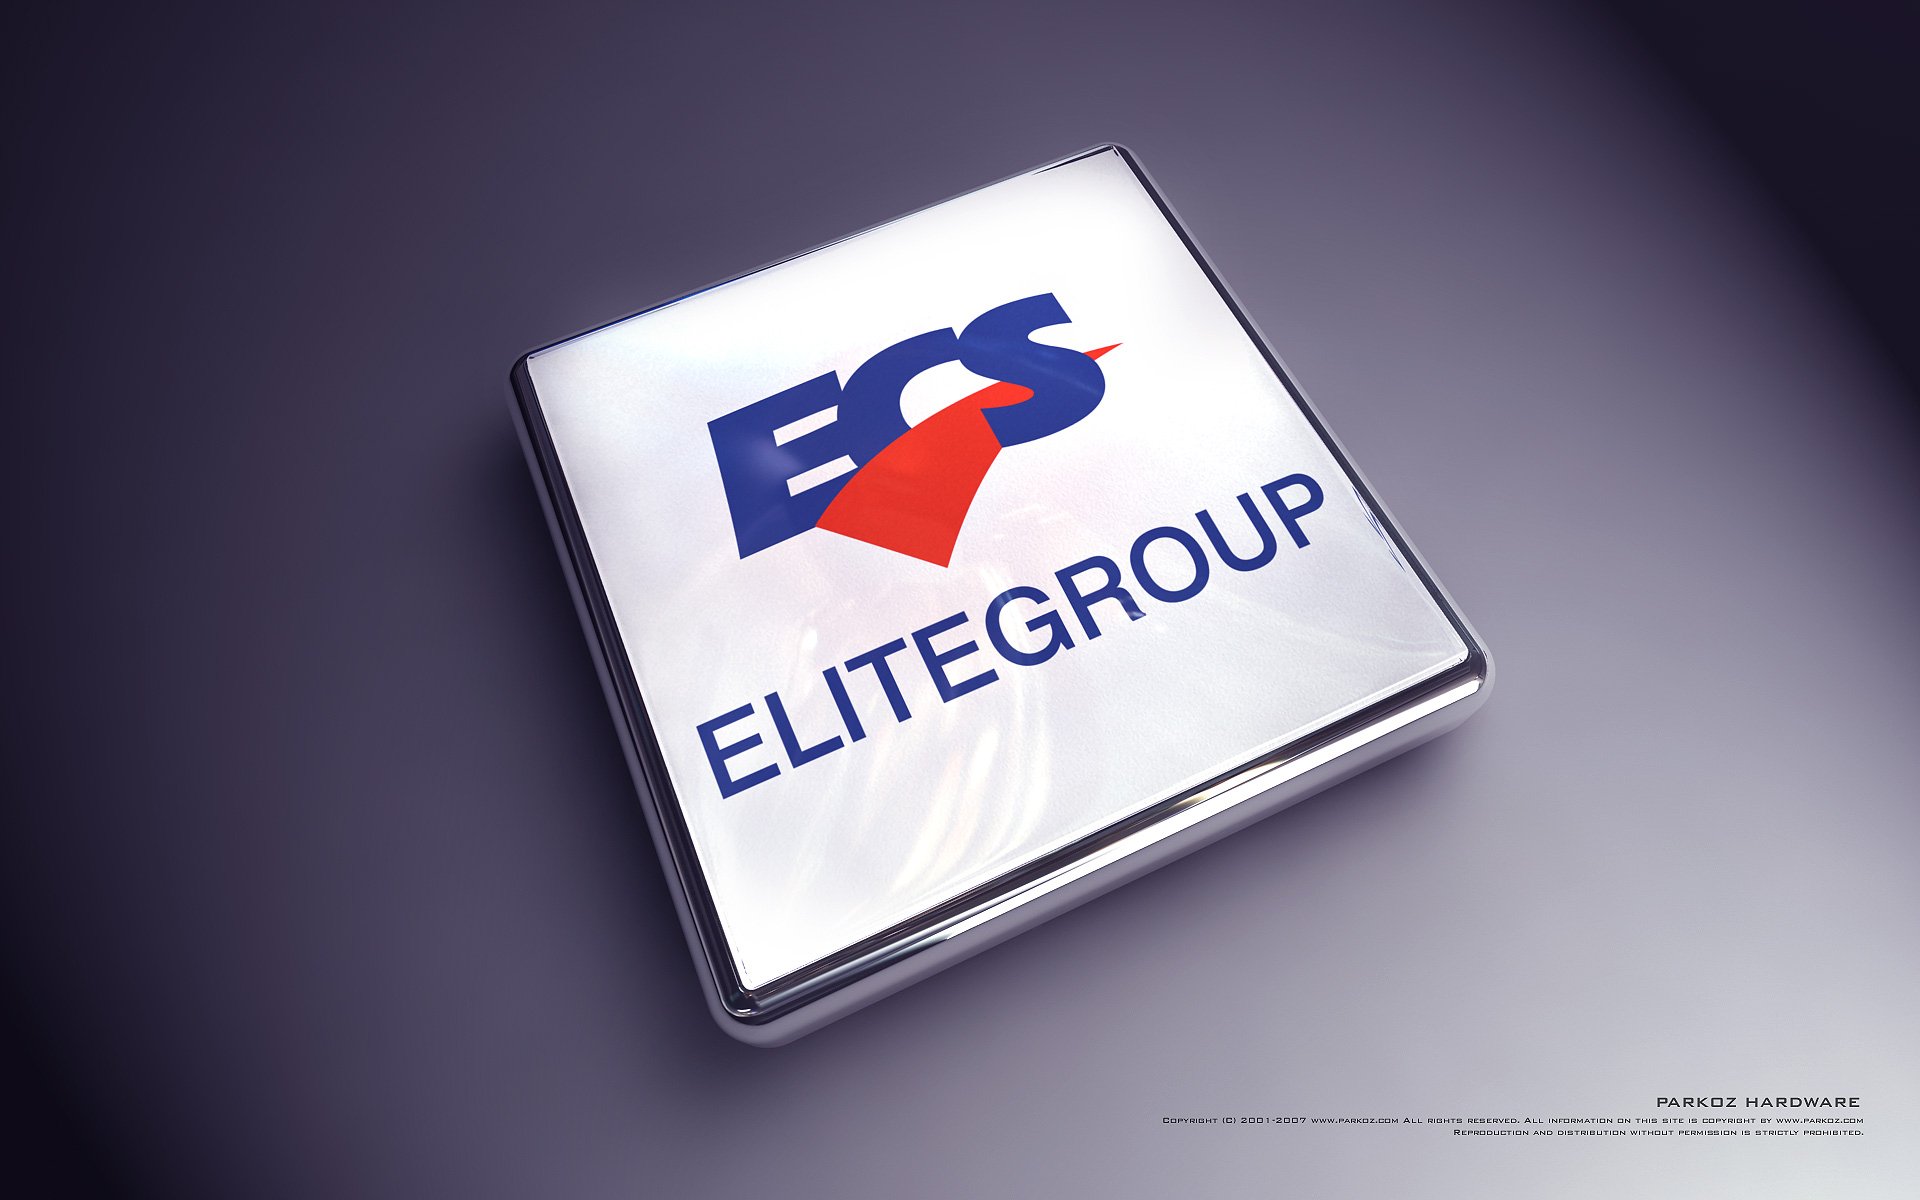 Elitegroup sẽ mang dòng bo mạch chủ 200 mới đến CES 2017